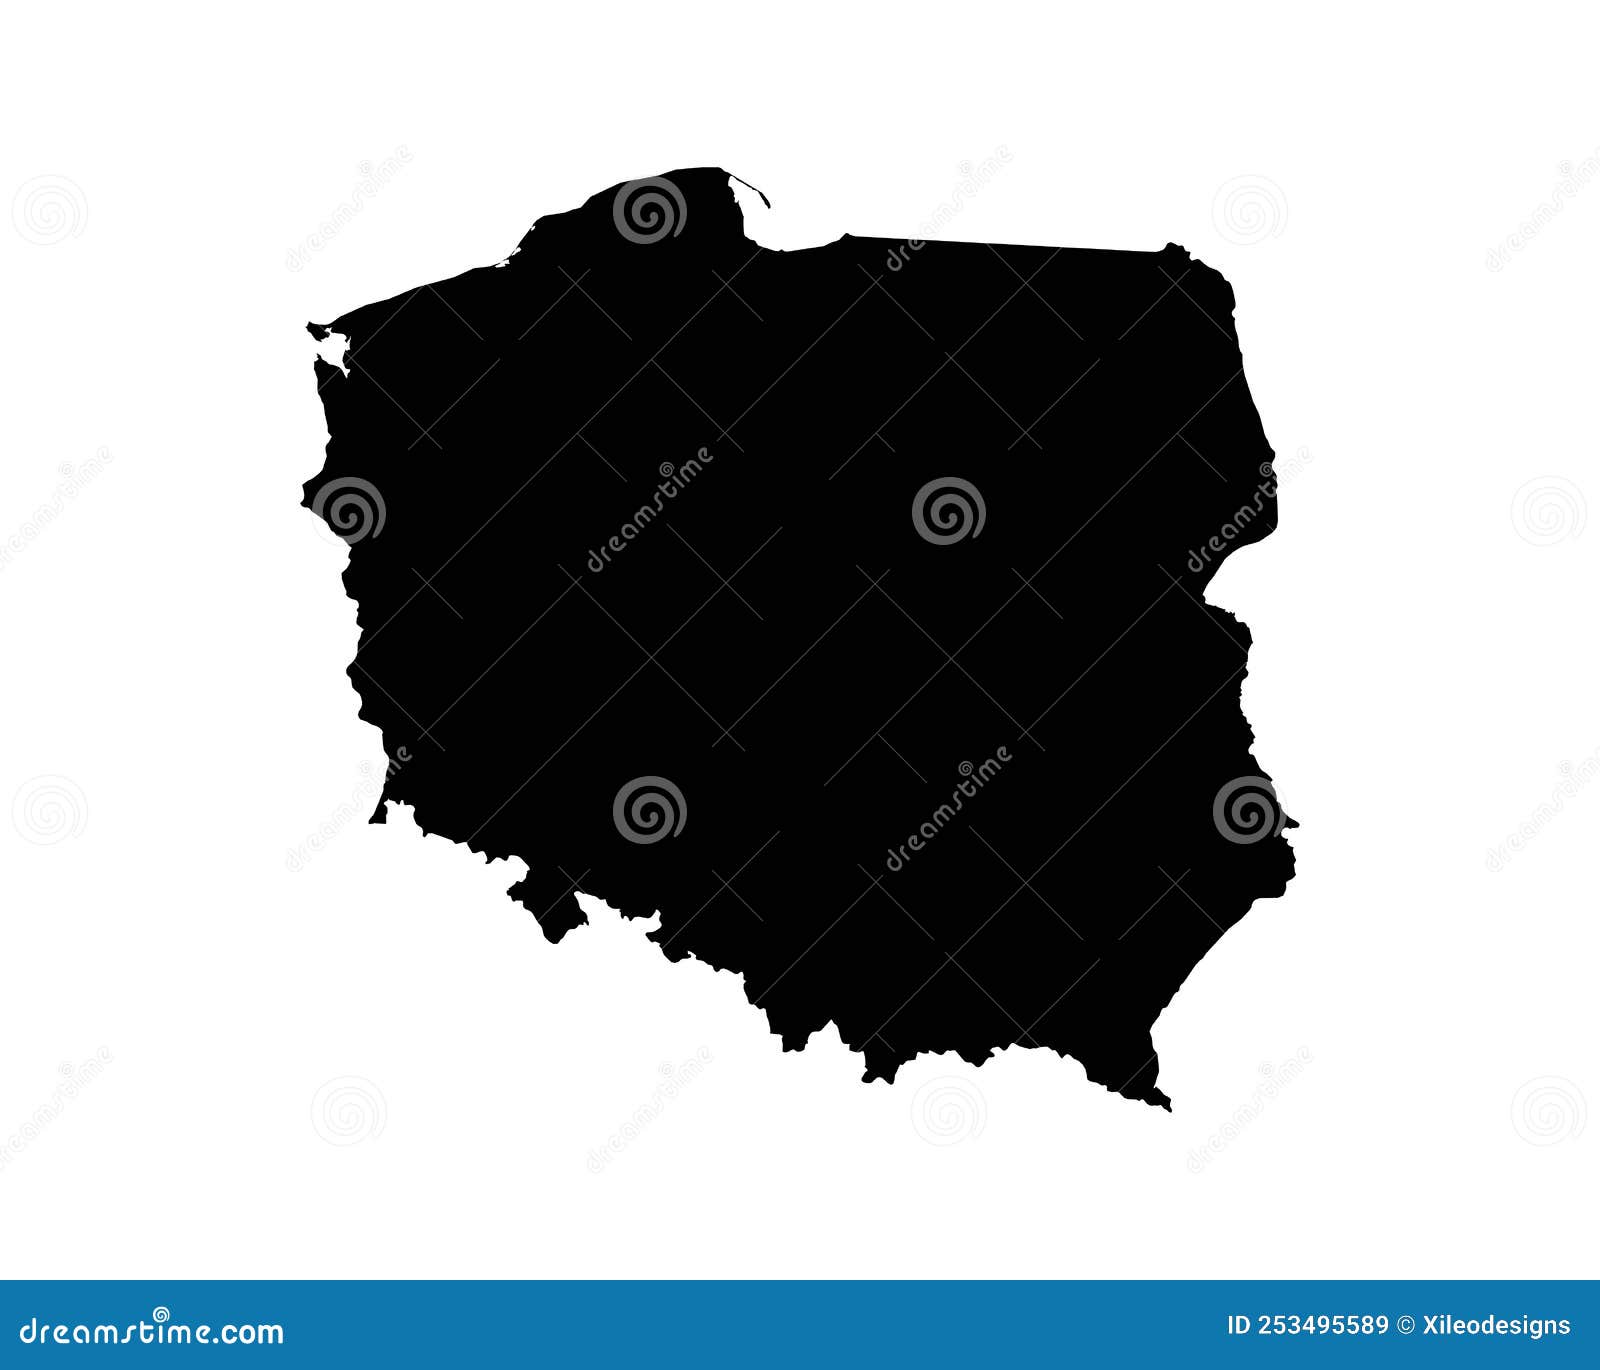 Géographie de la Pologne